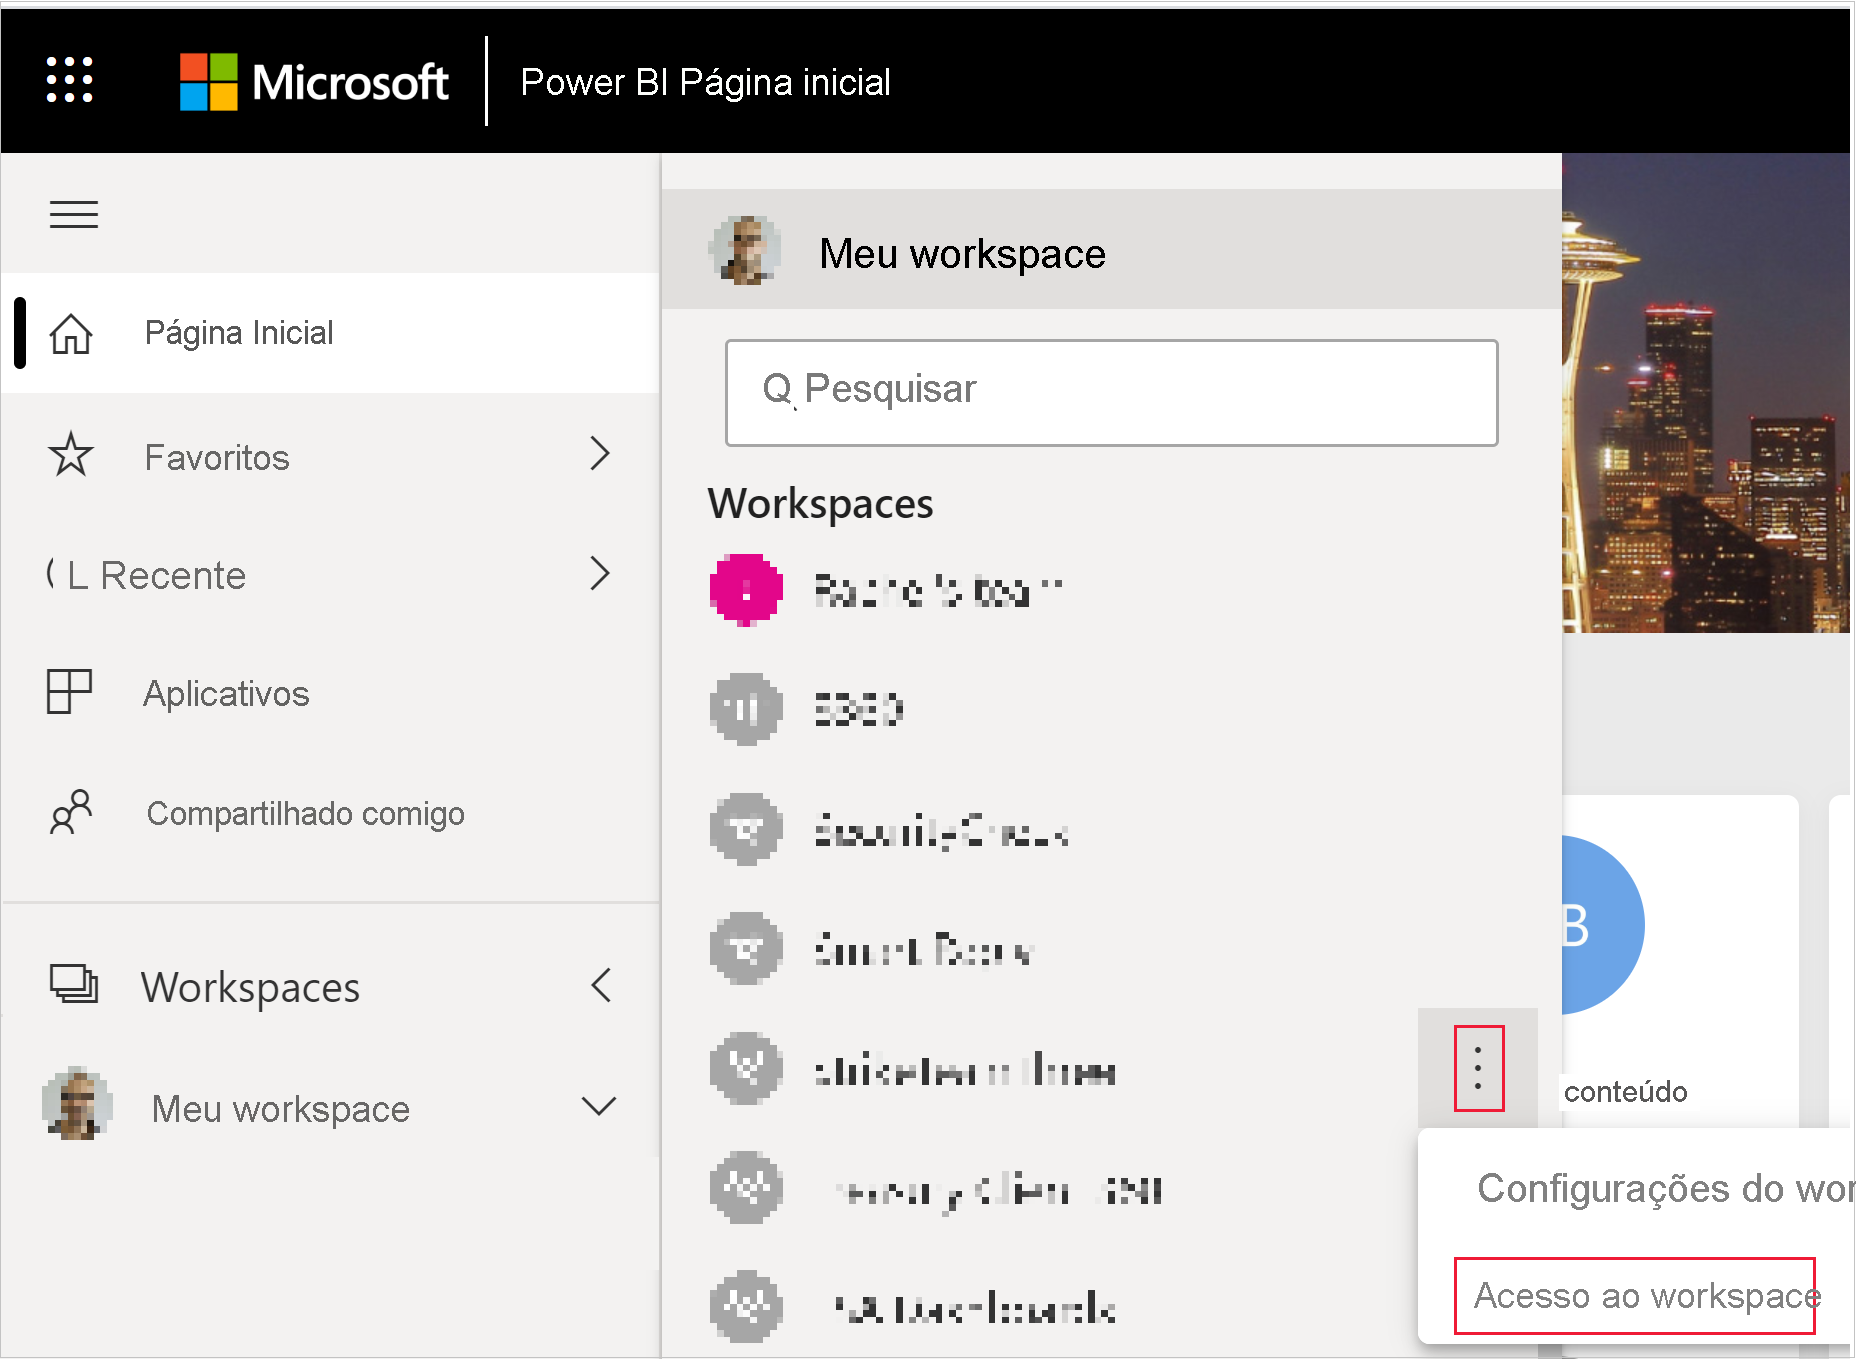 Captura de tela mostrando o botão de acesso do workspace no menu Mais de um workspace do Power BI.